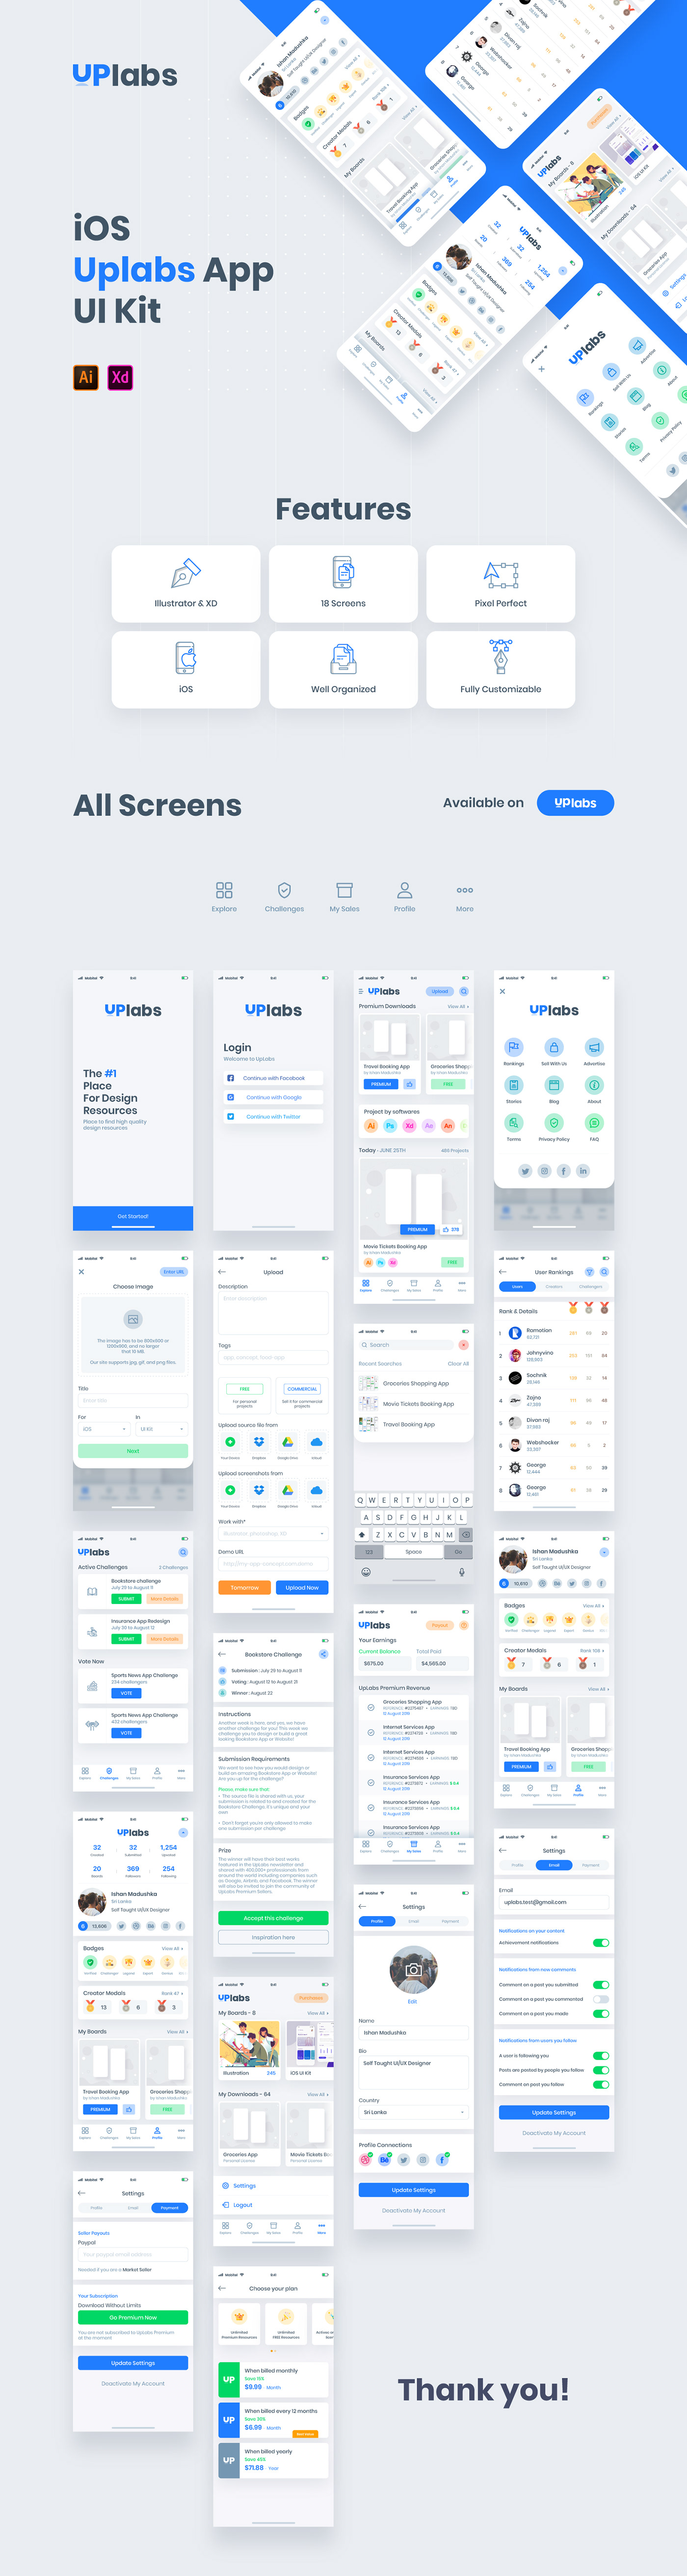 ios UI ux user interface Mobile UI UpLabs ui design UX design app design app